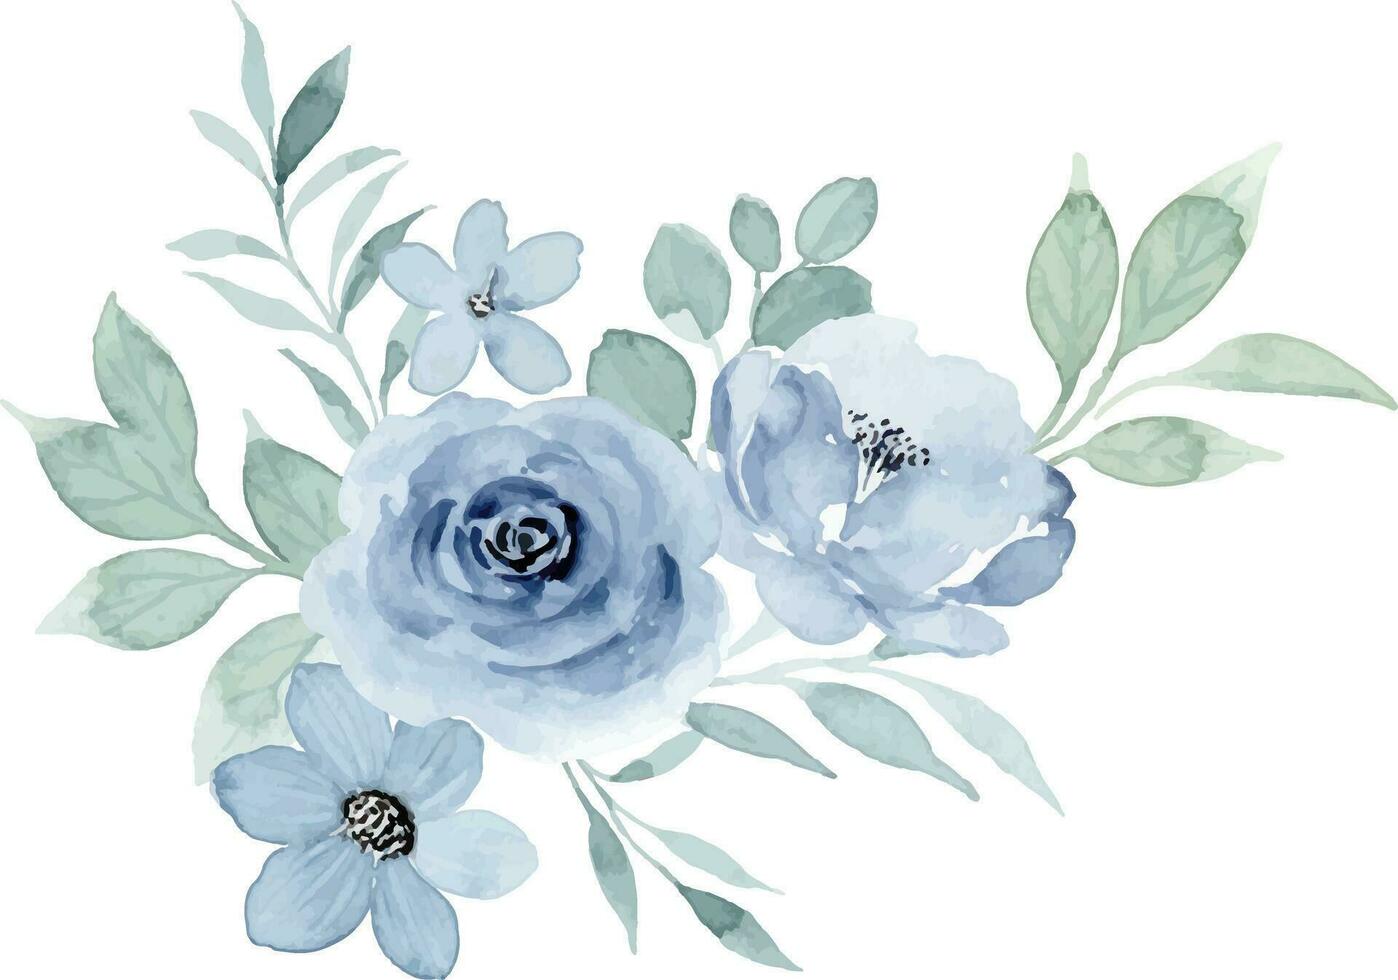 bleu floral aquarelle bouquet pour arrière-plan, mariage, tissu, textile, salutation, carte, fond d'écran, bannière, autocollant, décoration etc. vecteur